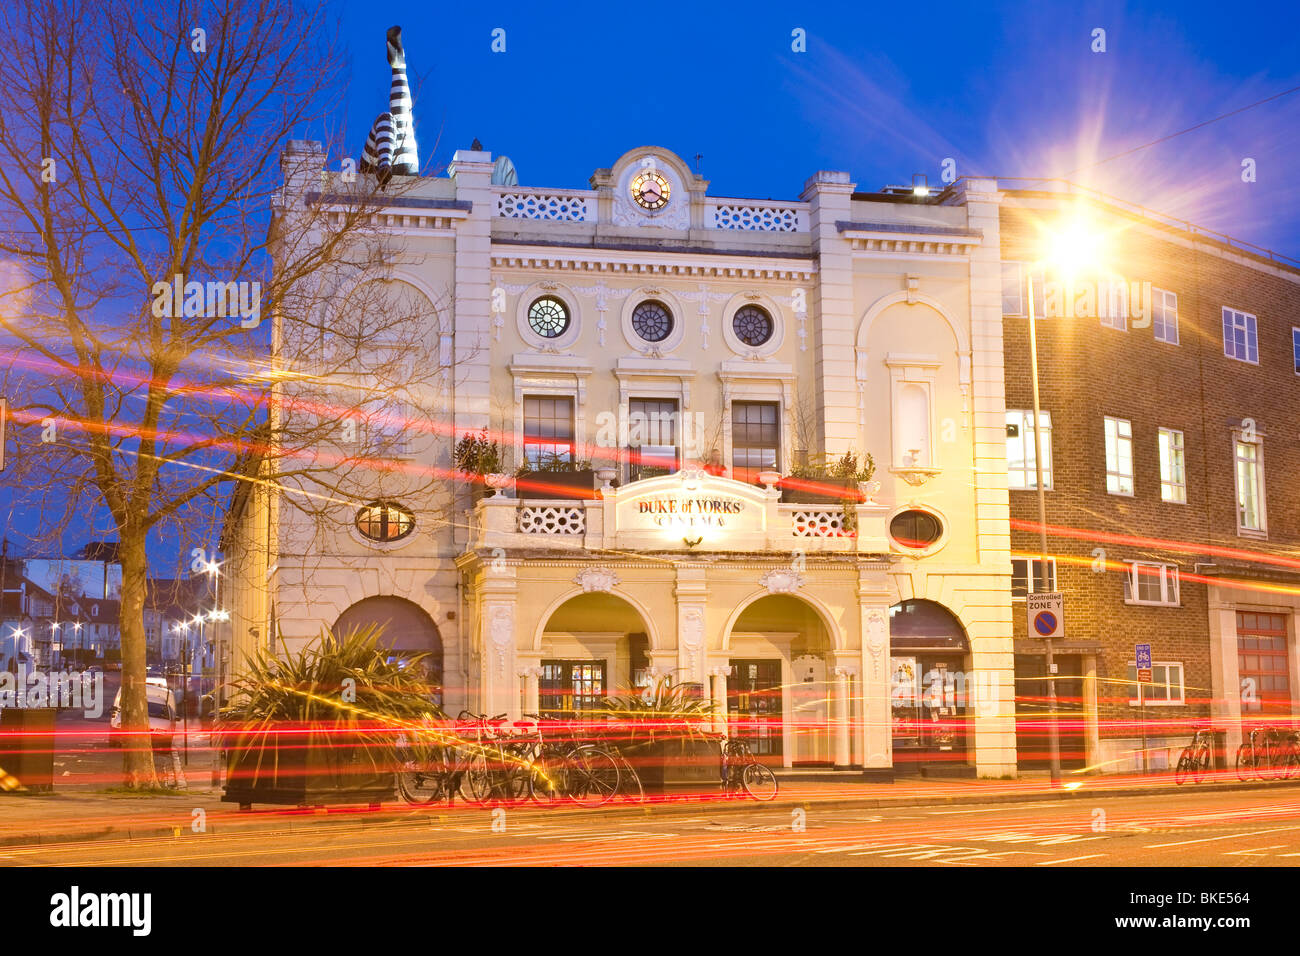 Cine del duque de York. Preston Circus, Brighton, Sussex, Inglaterra, Reino Unido. Foto de stock